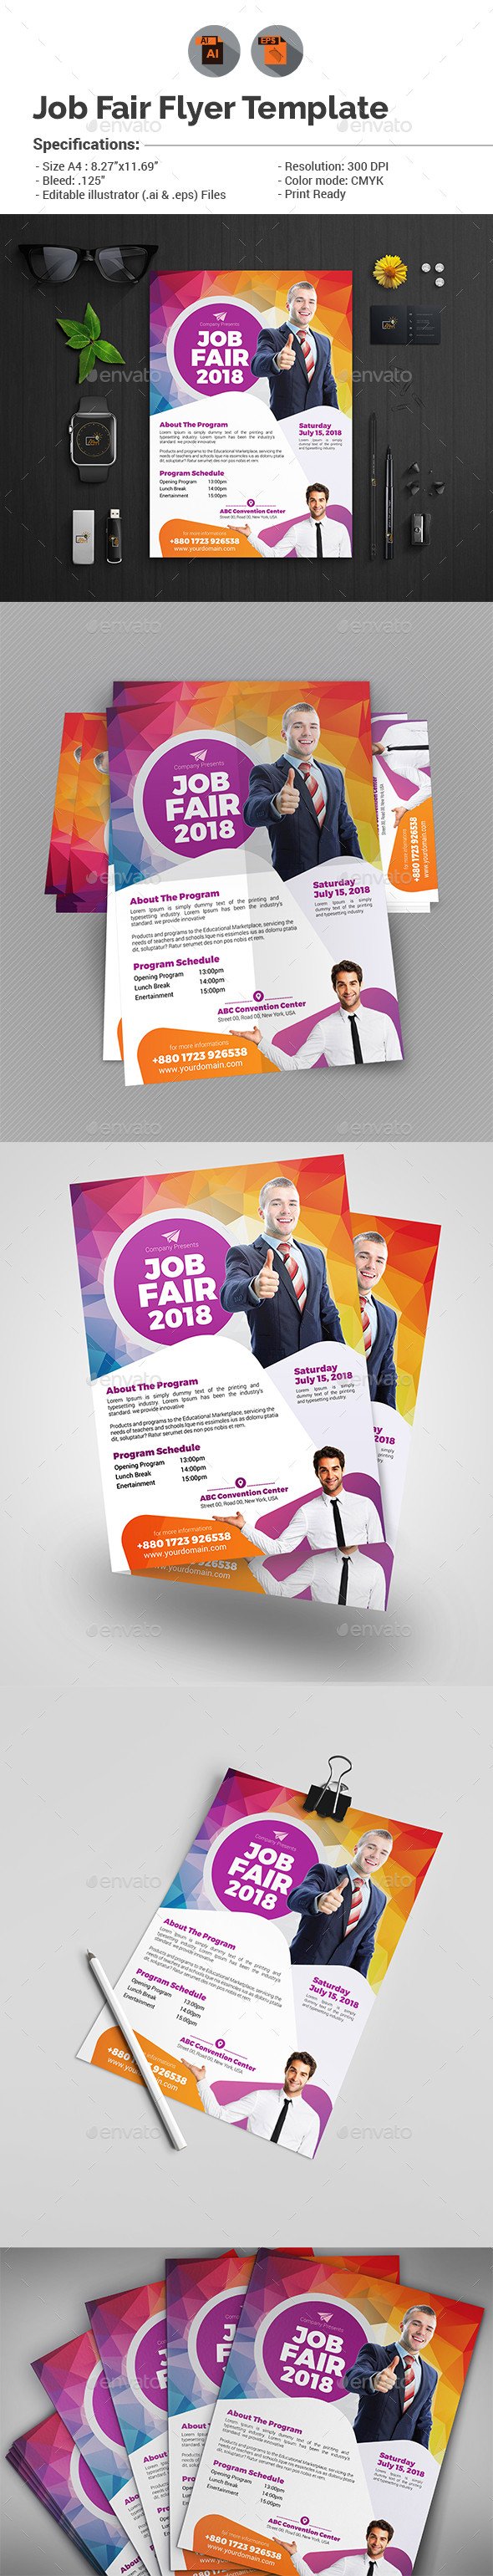 Job Fair Flyer Template V2 by aam360